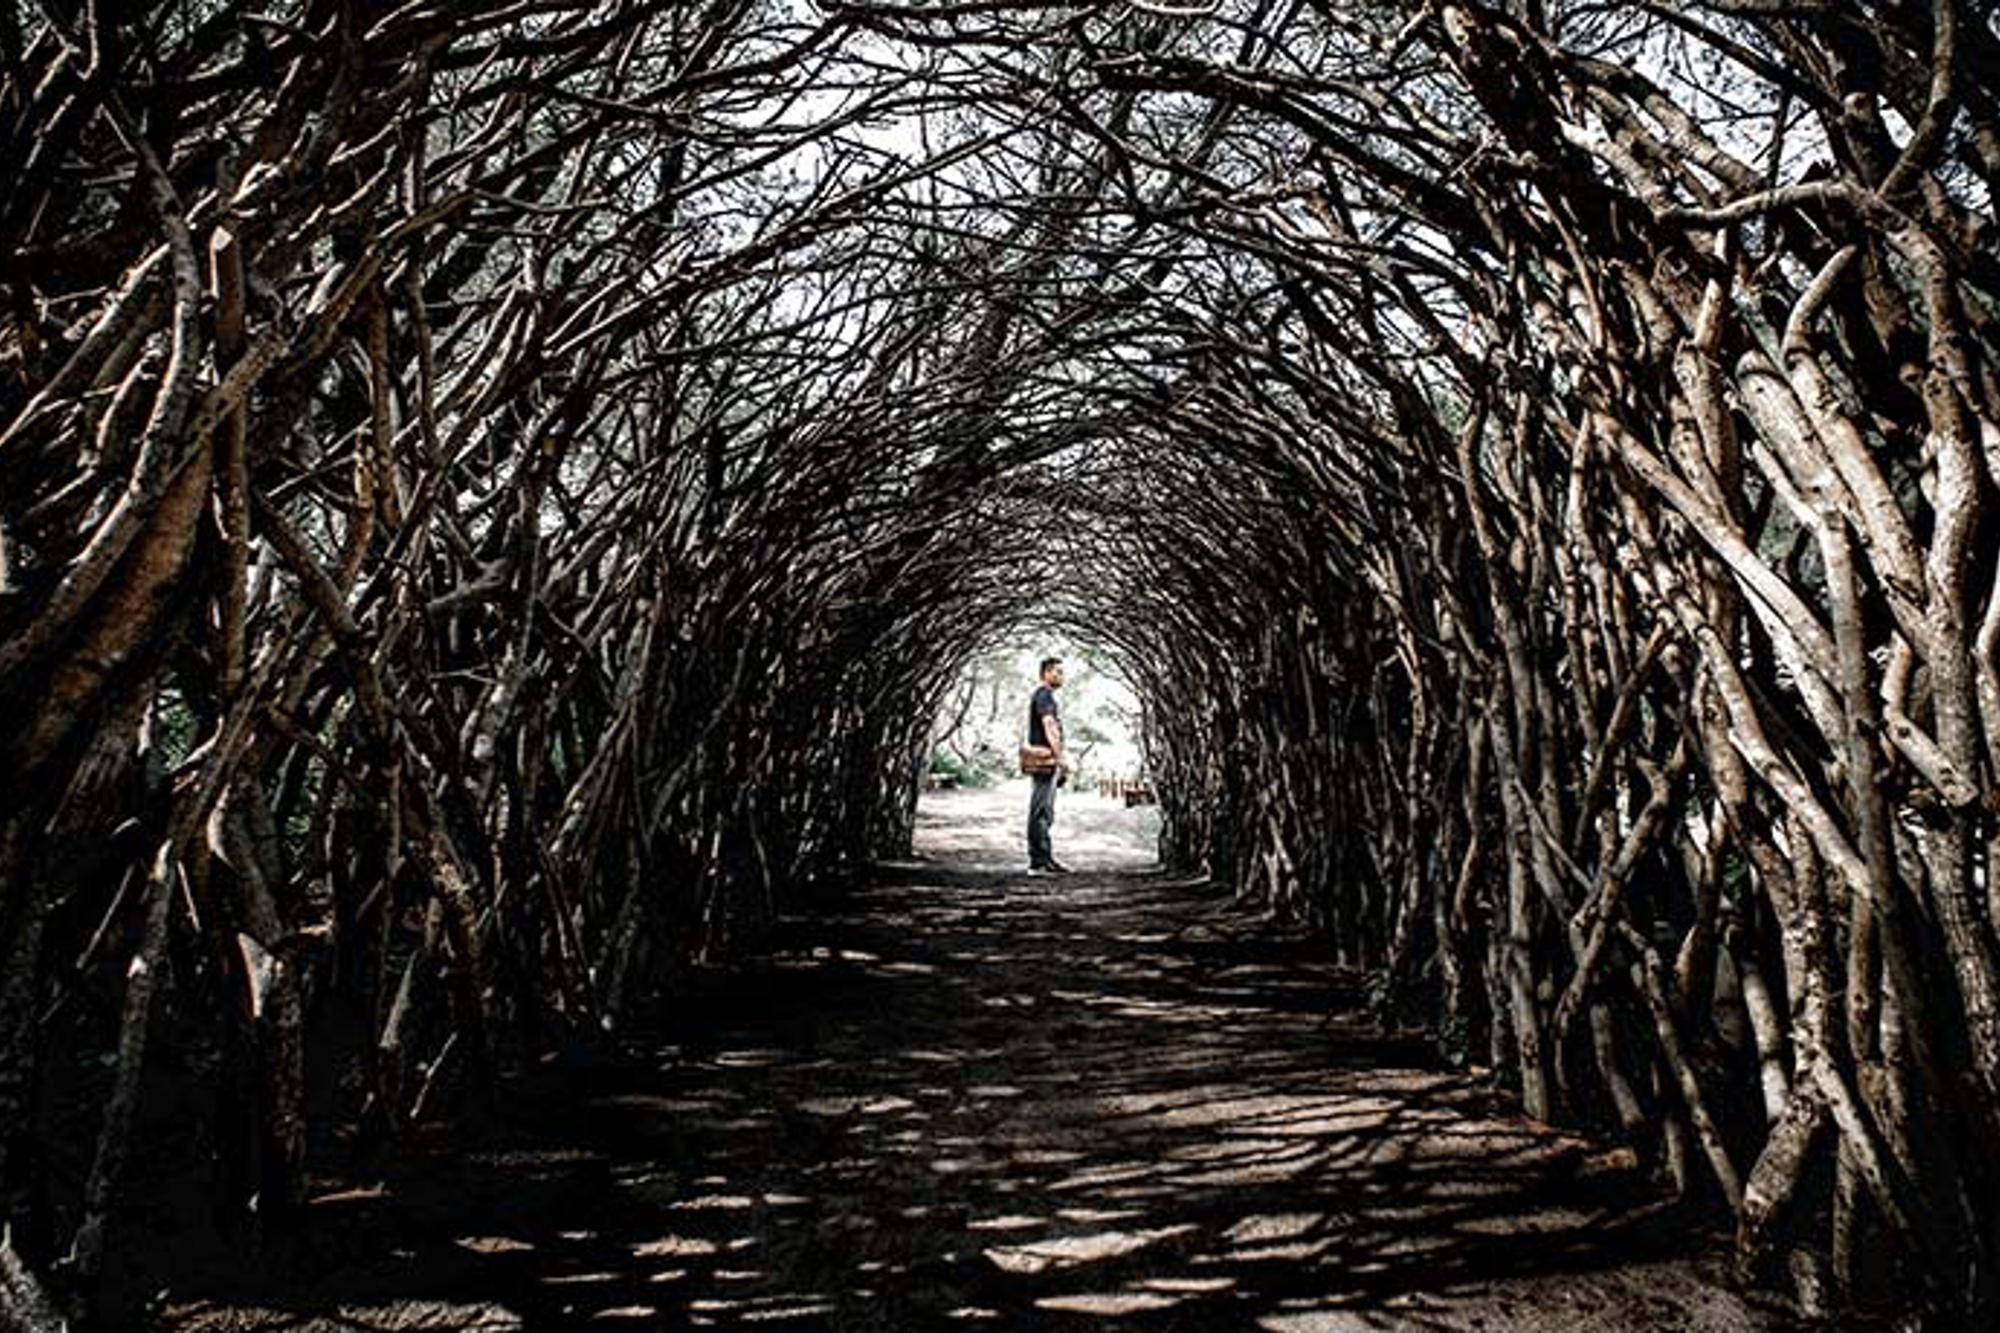 En tunnel av grenar. I slutet av tunneln står en person.